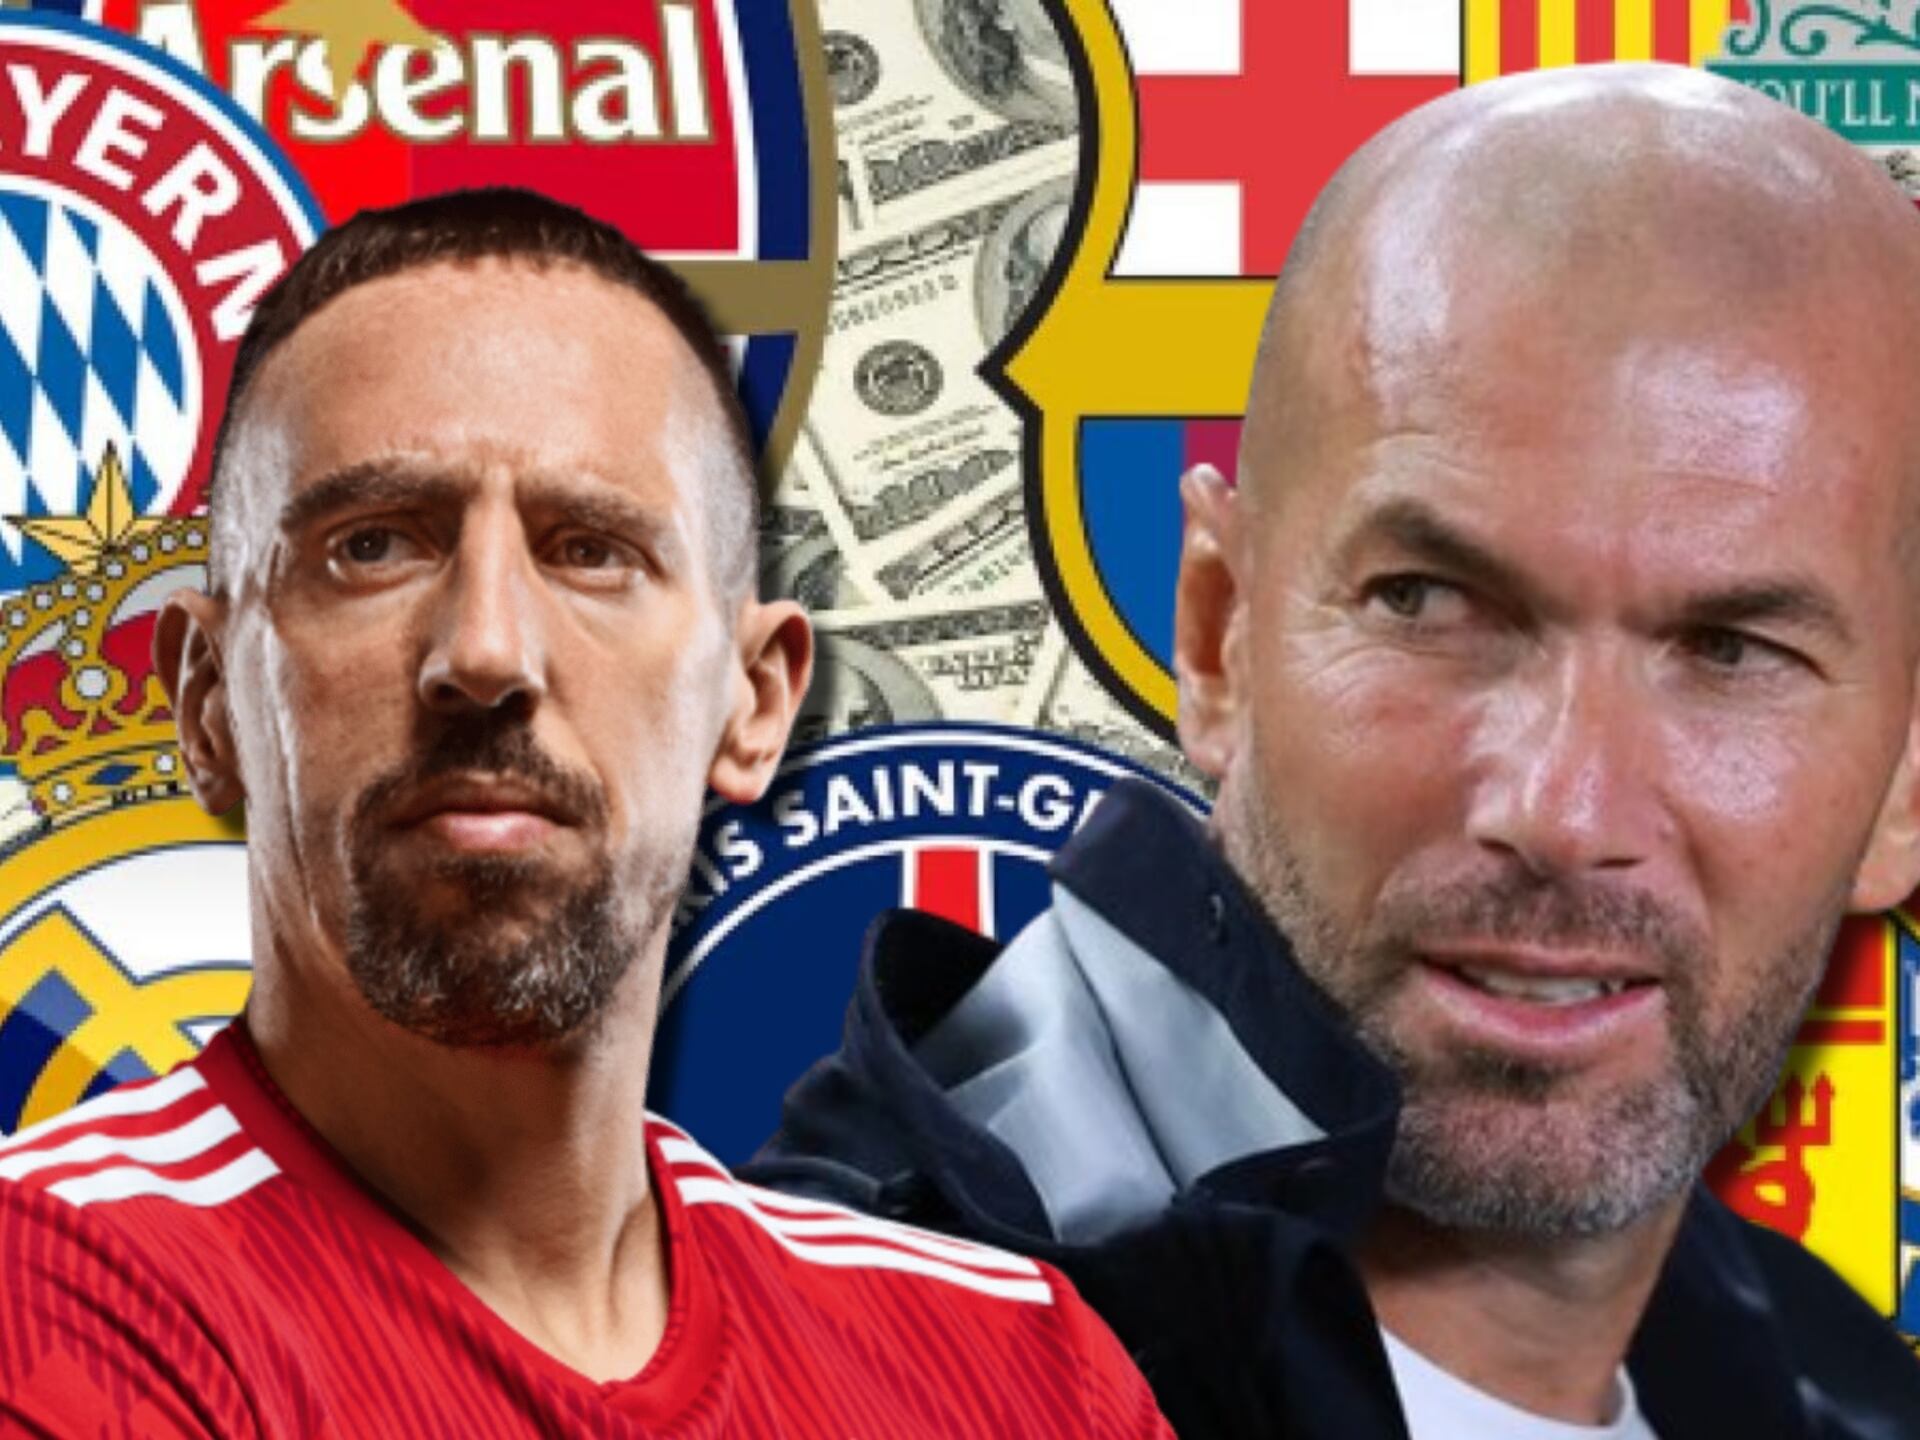 El club que quiere juntar a Zidane con Ribéry para salir campeón y dominar Europa